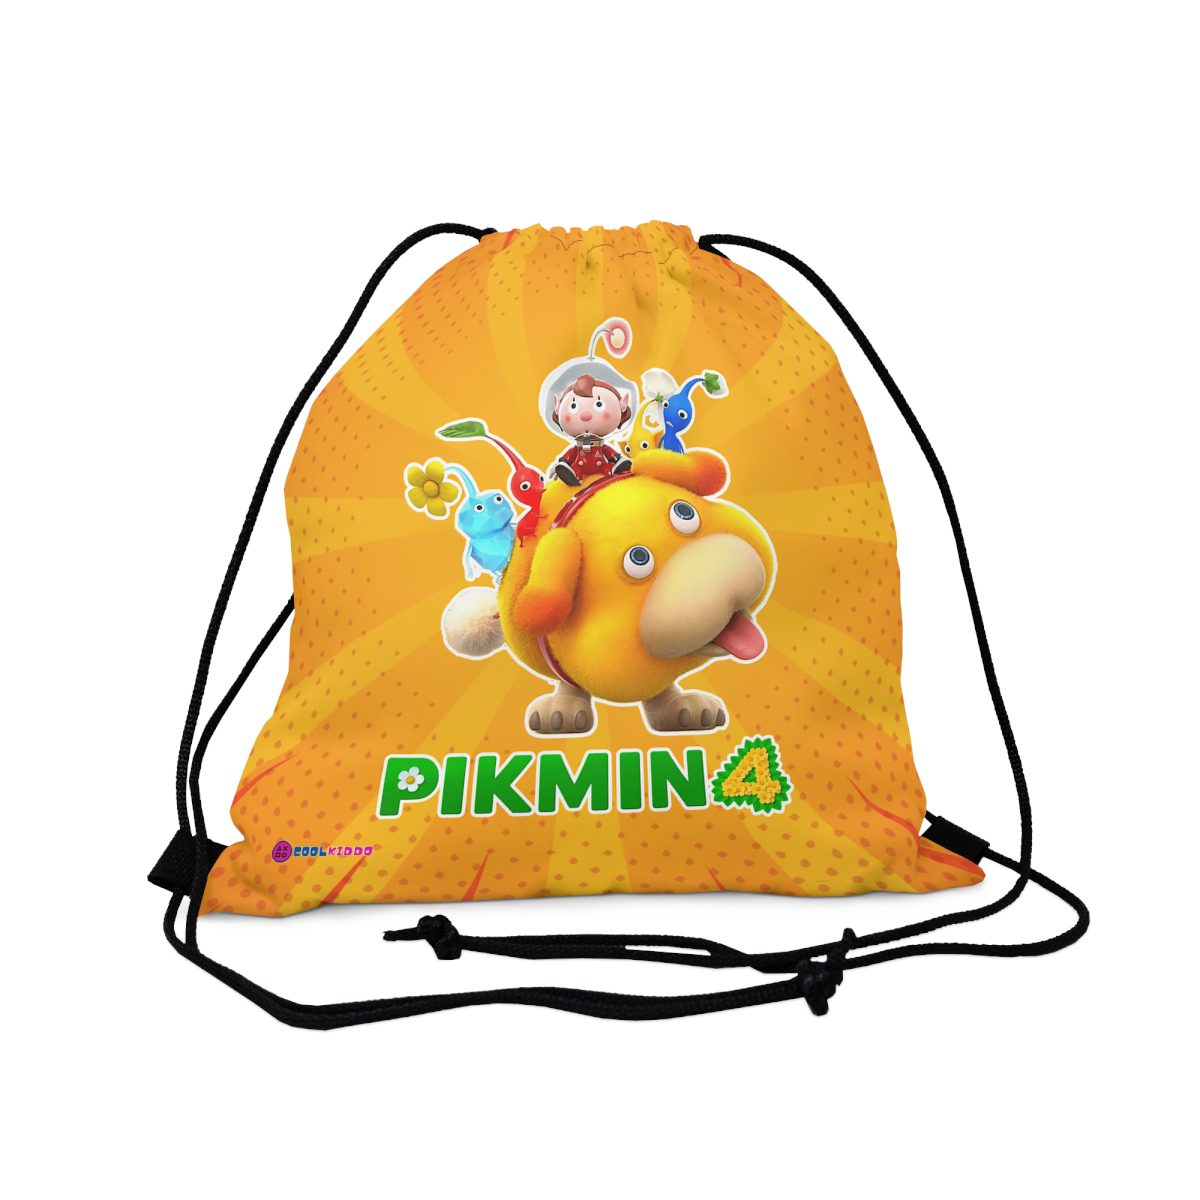 PIKMIN 4 Video Game Yellow Drawstring Bag Cool Kiddo 14